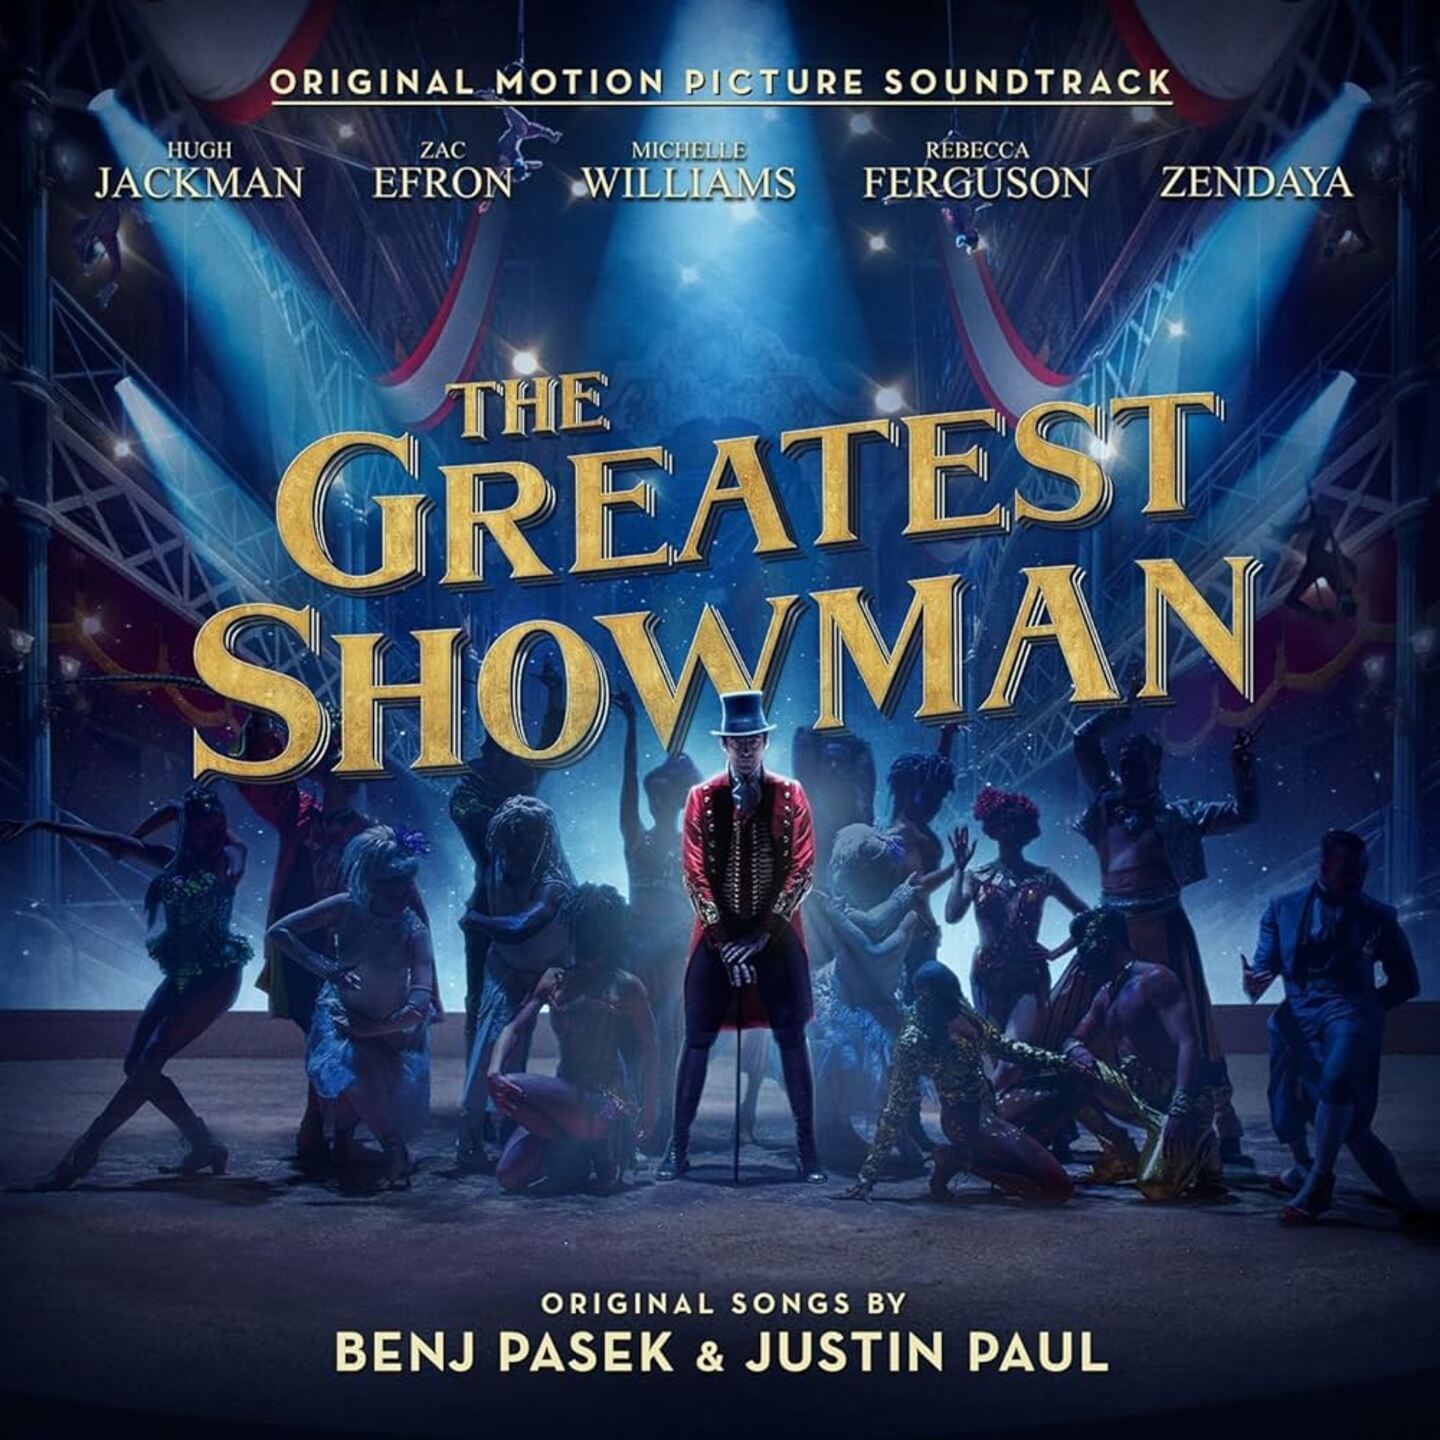 V/A - The Greatest Showman (Original Motion Picture Soundtrack) LP